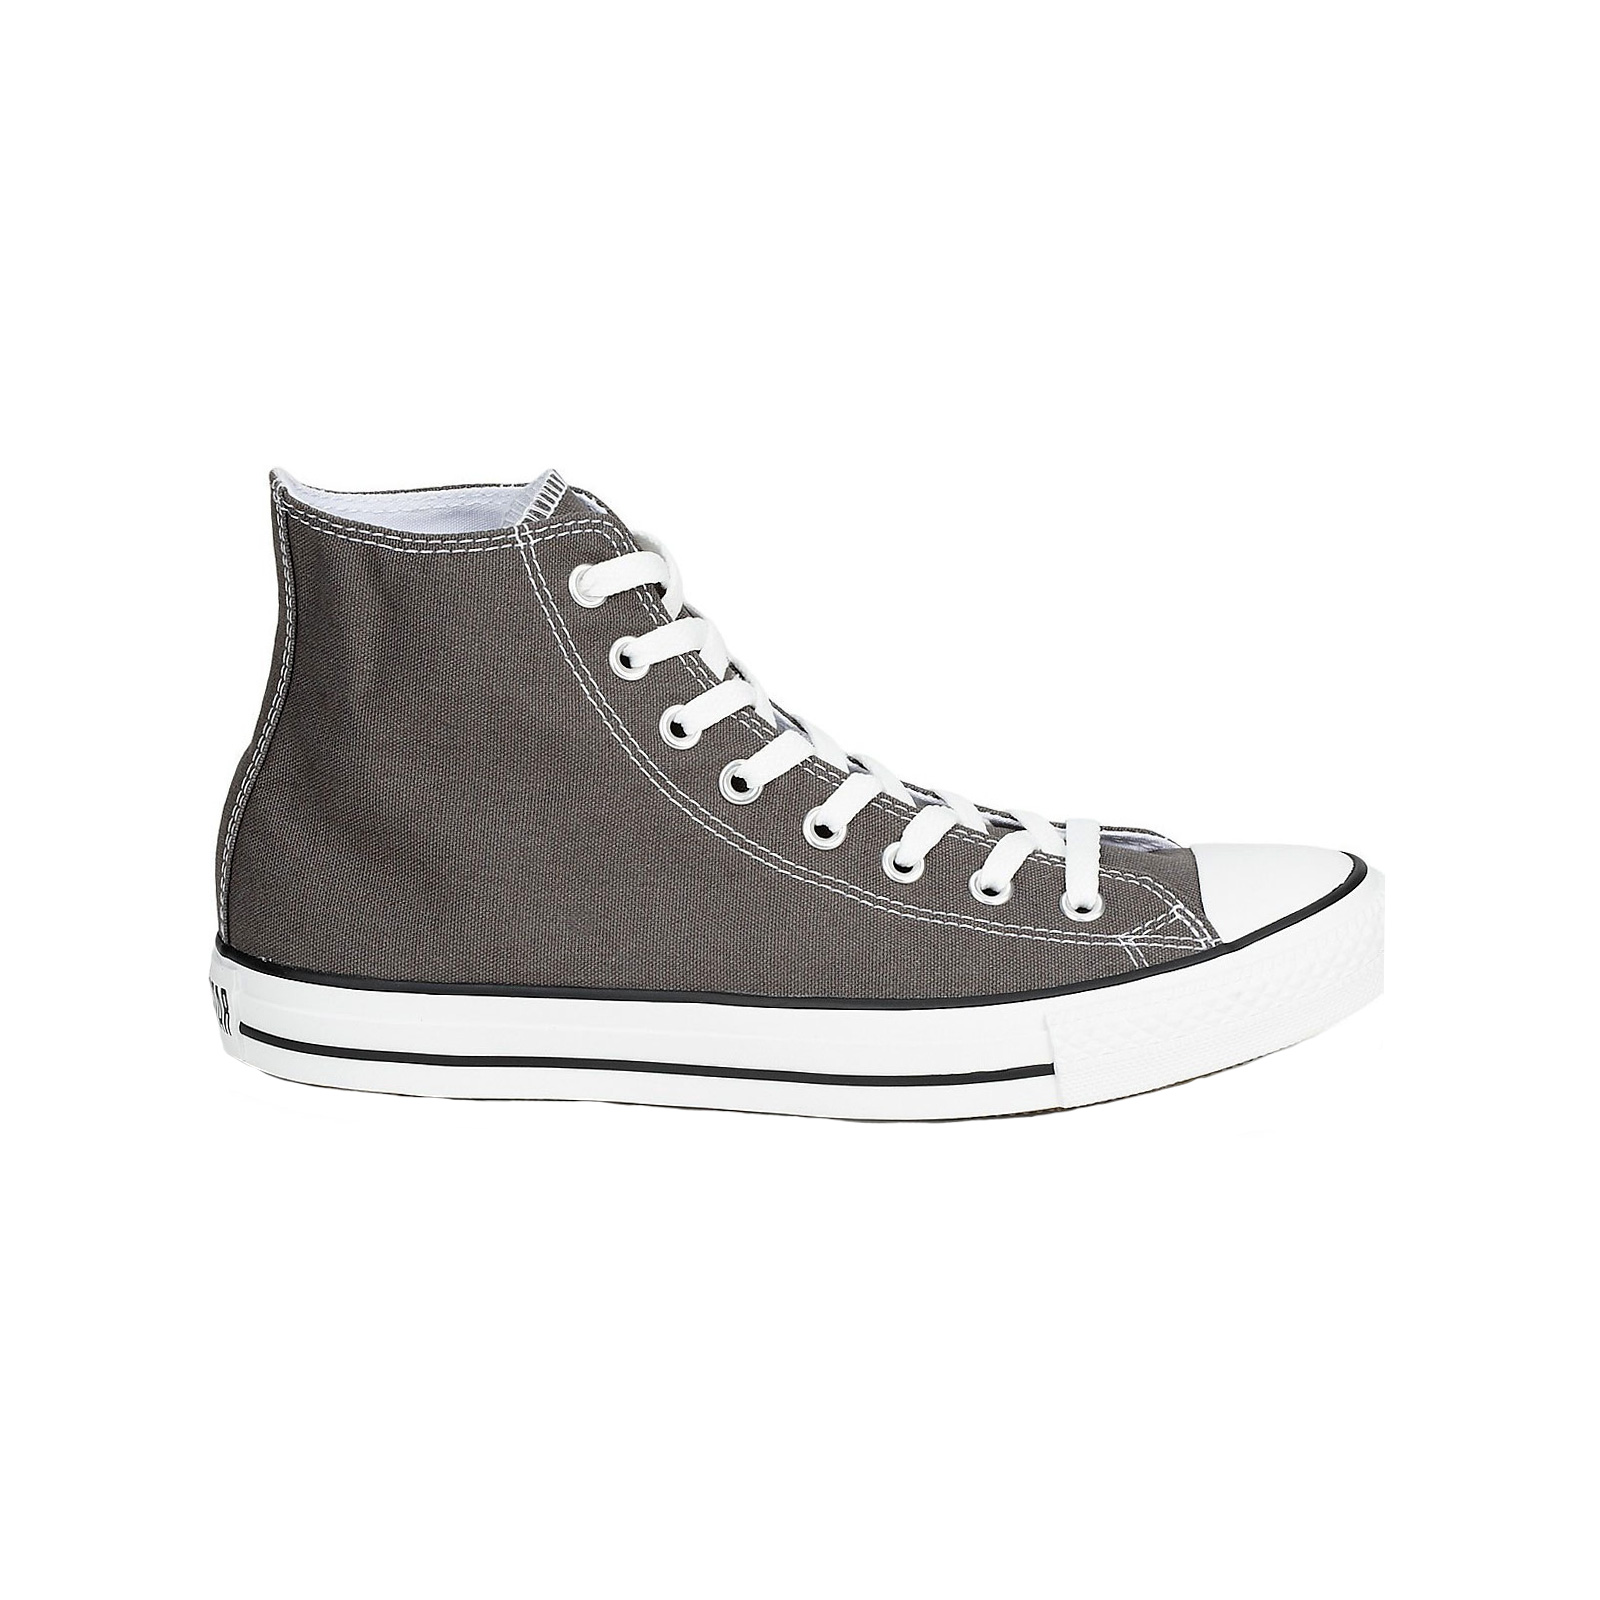 Ανδρικά > Παπούτσια > Sneaker > Παπούτσι Mid Cut Converse - CHUCK TAYLOR ALL STAR - 010-CHARCOAL